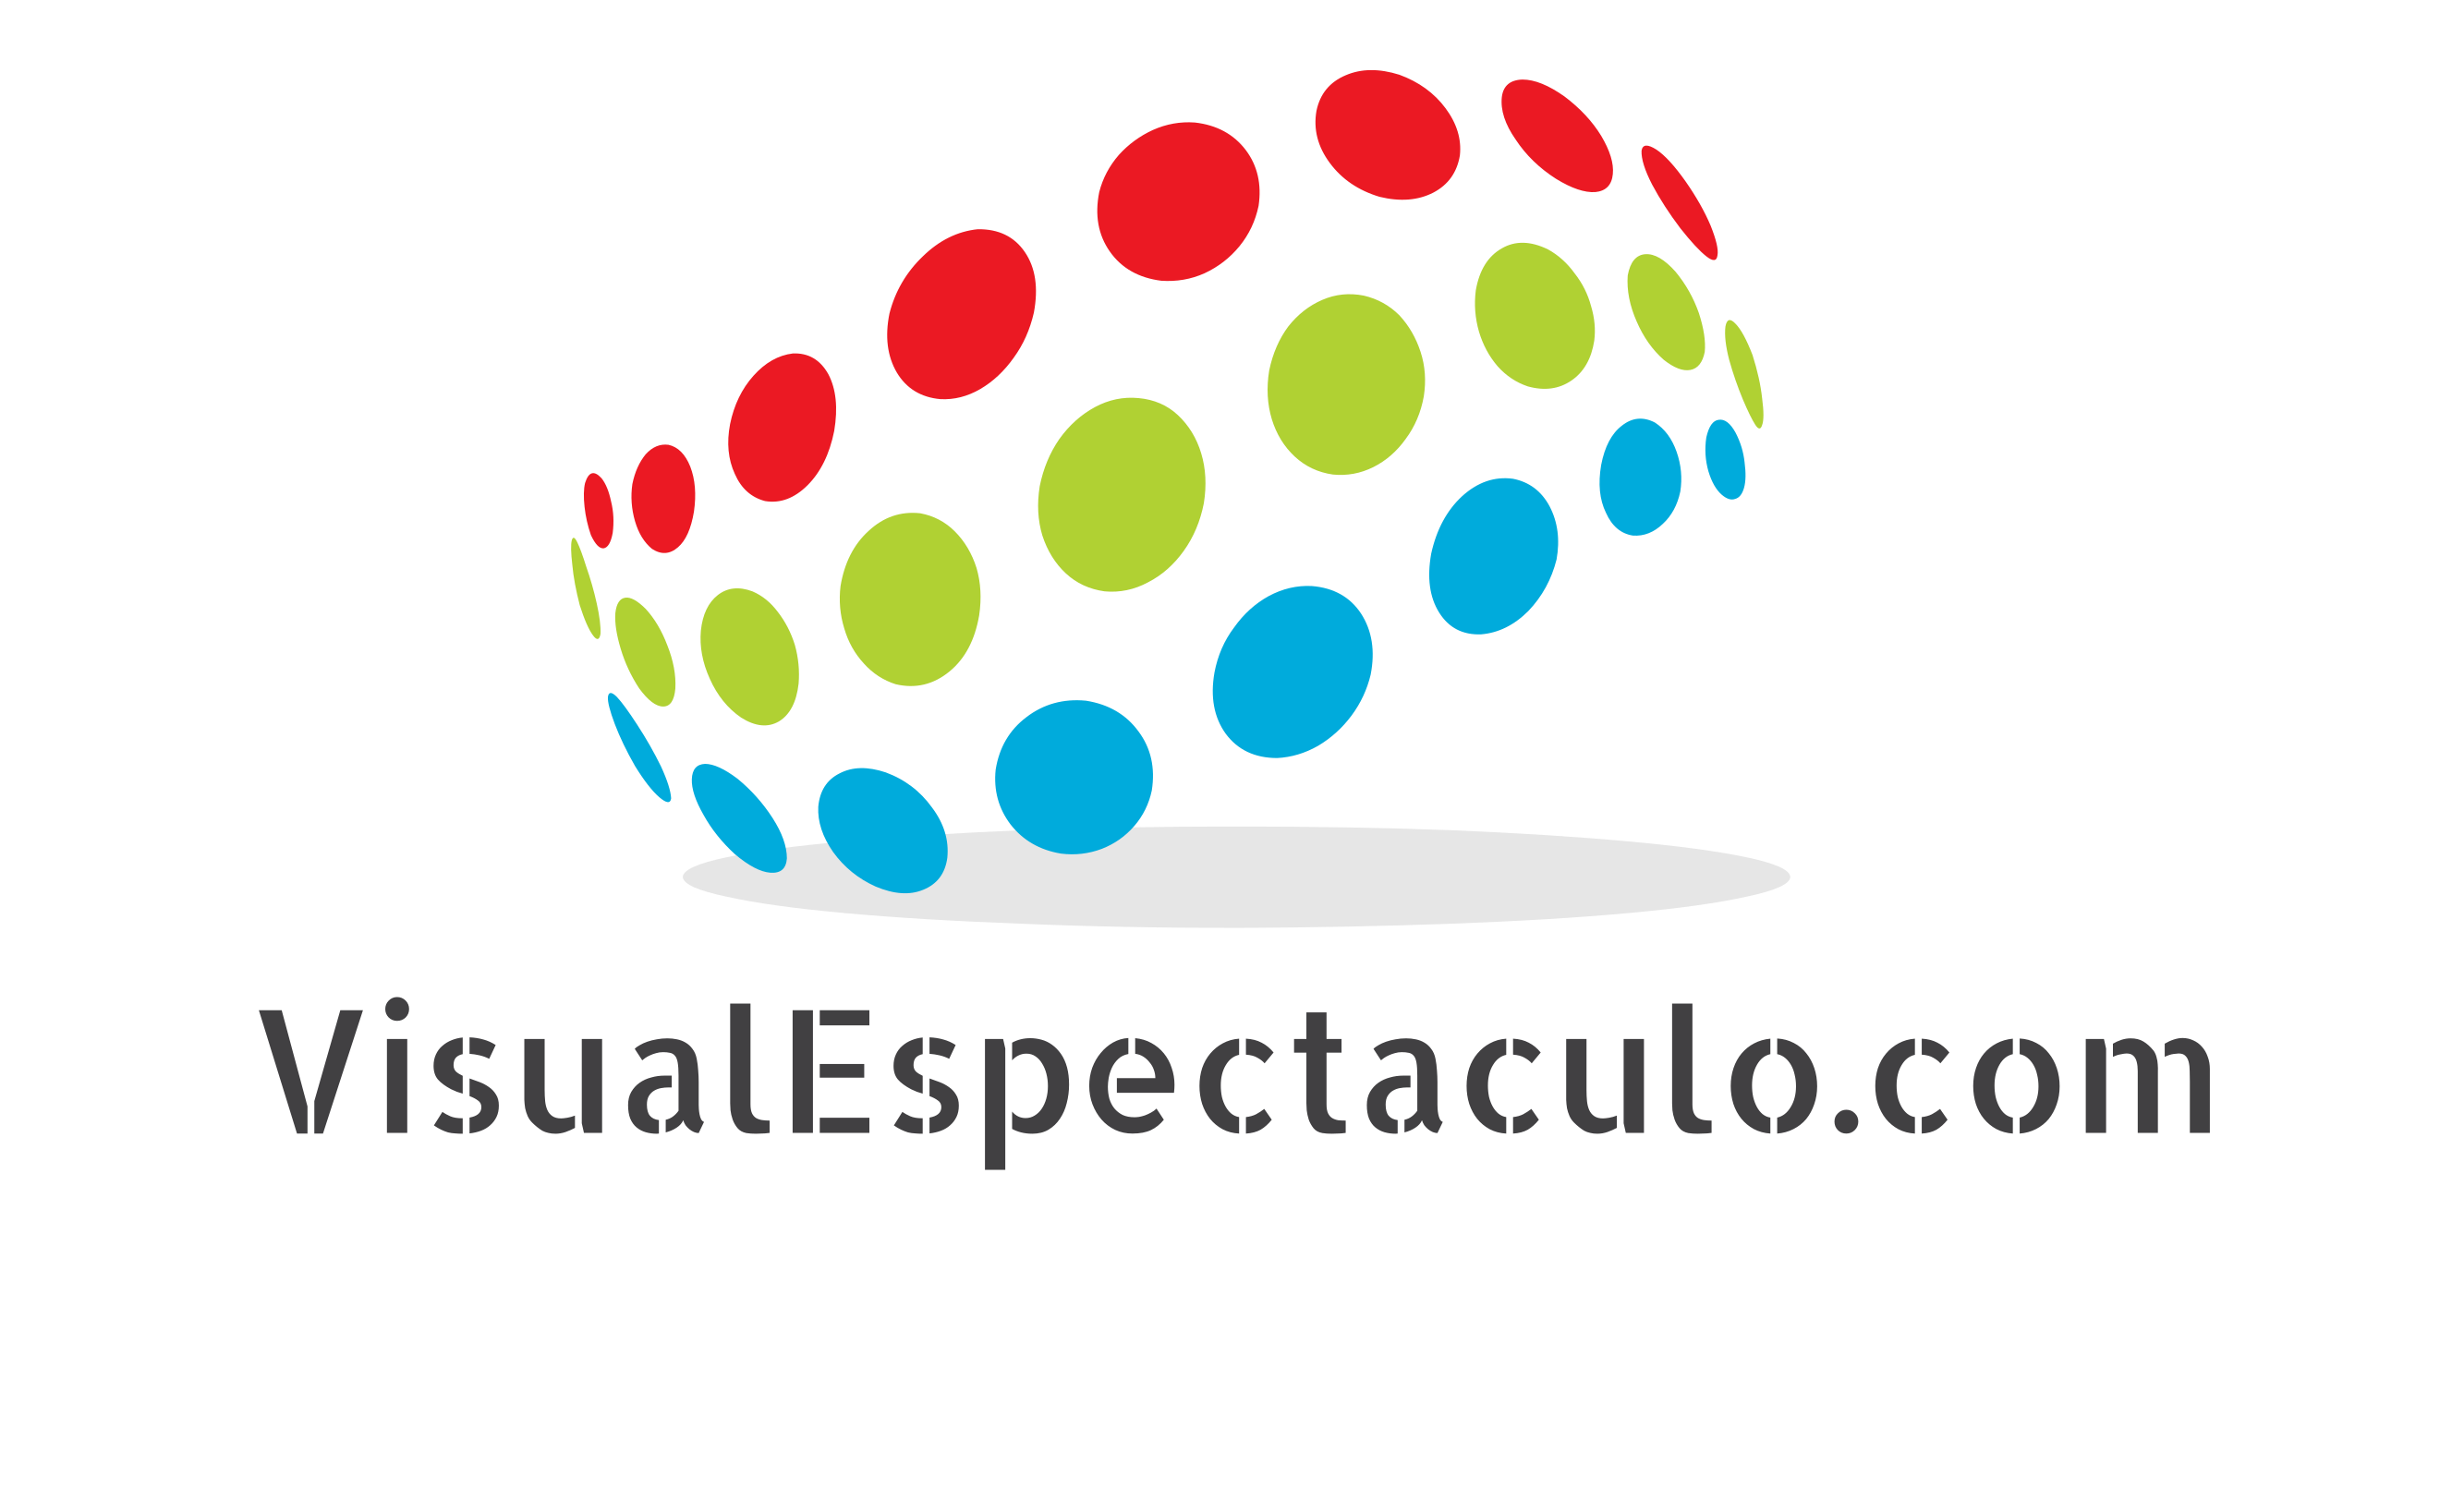 Visual Espectaculo .com